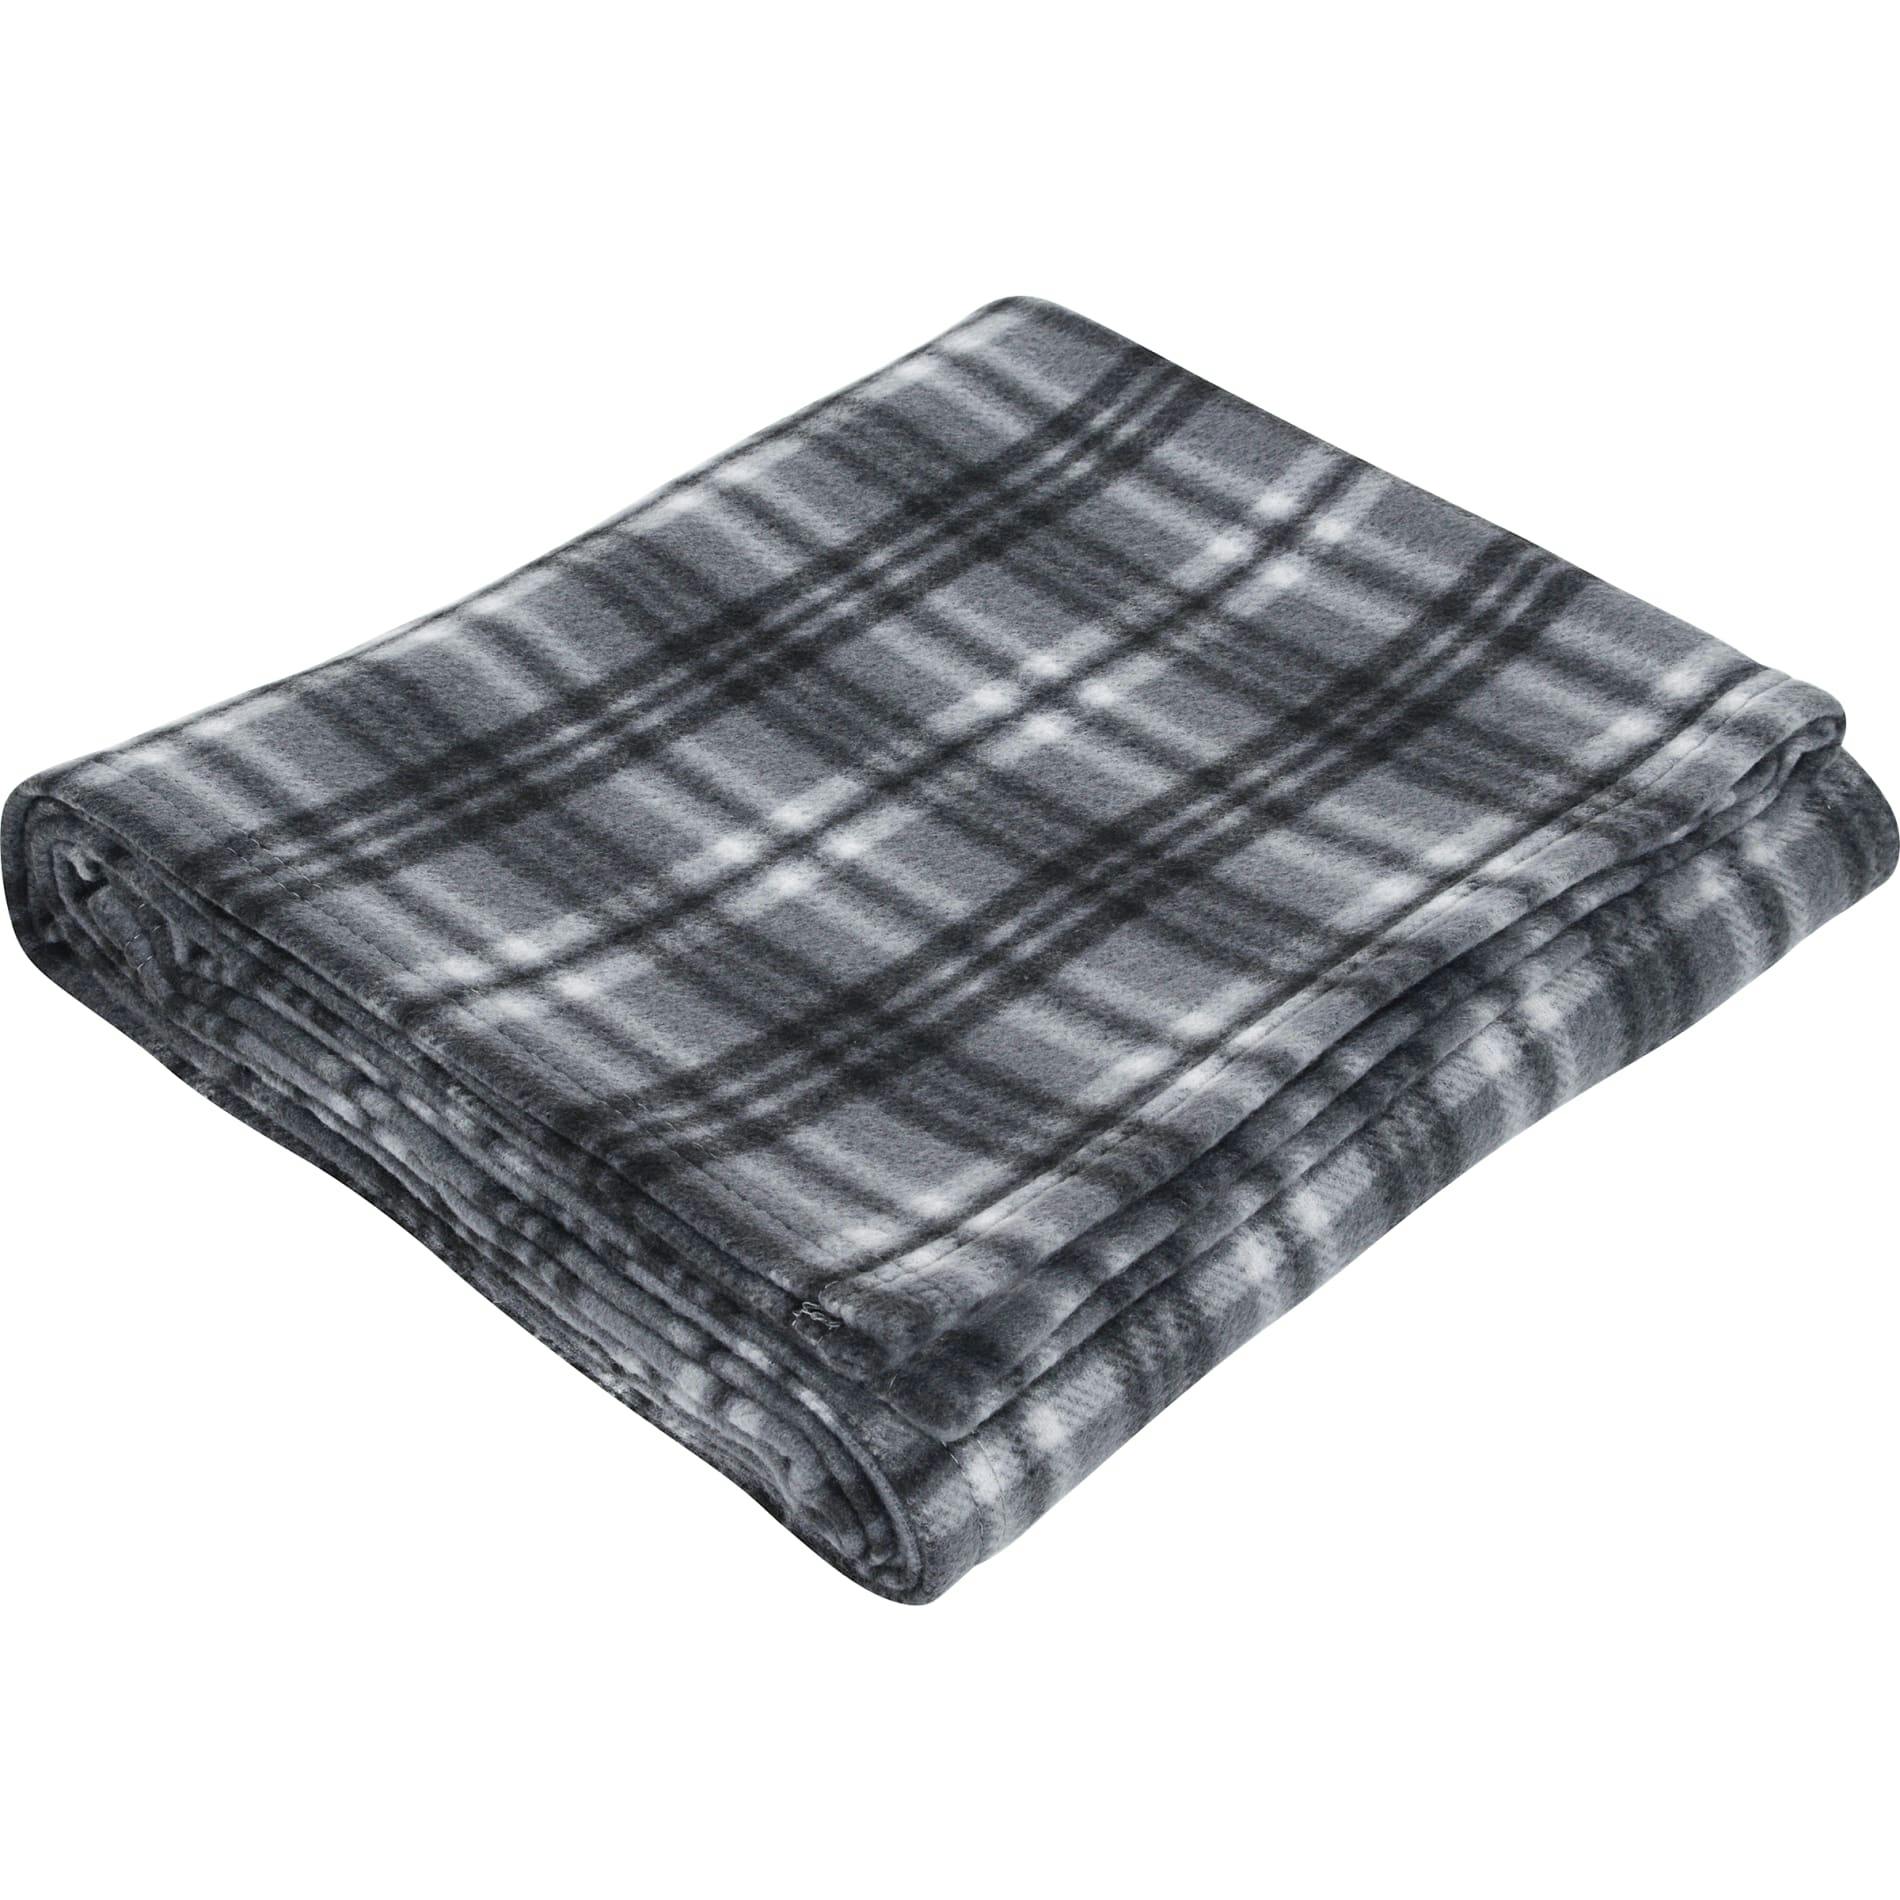 Plaid Fleece Blanket - additional Image 2